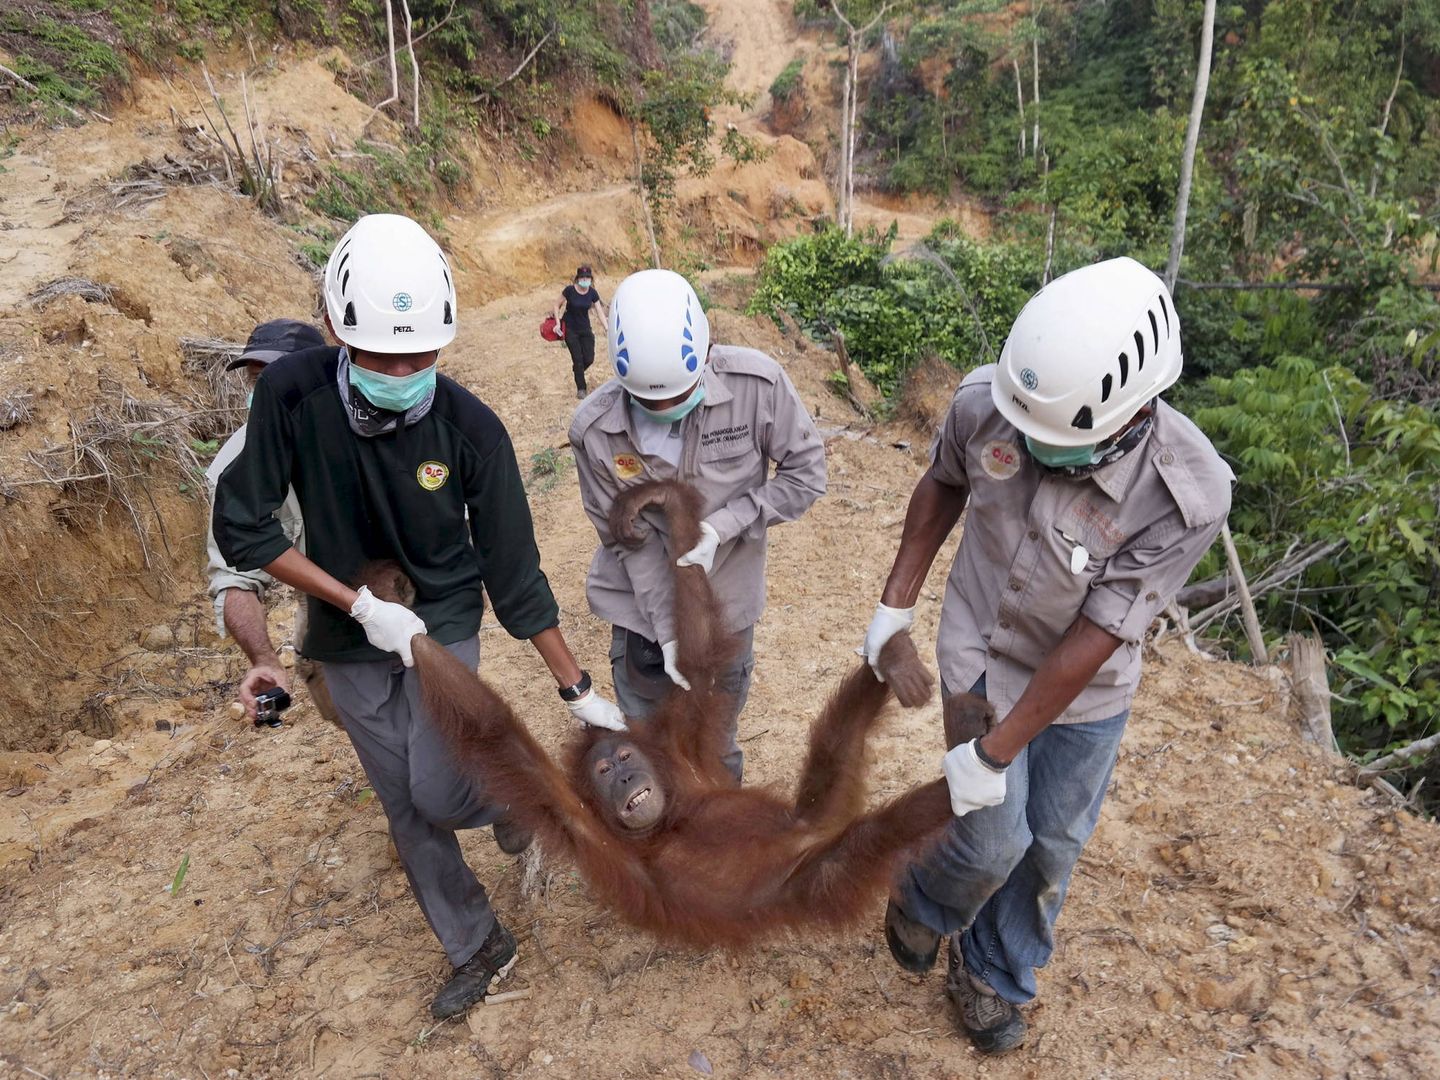 Conservacionistas rescatan a una hembra de orangután que había quedado aislada en una pantación de aceite de palma, en Langkat, Sumatra. (Reuters)